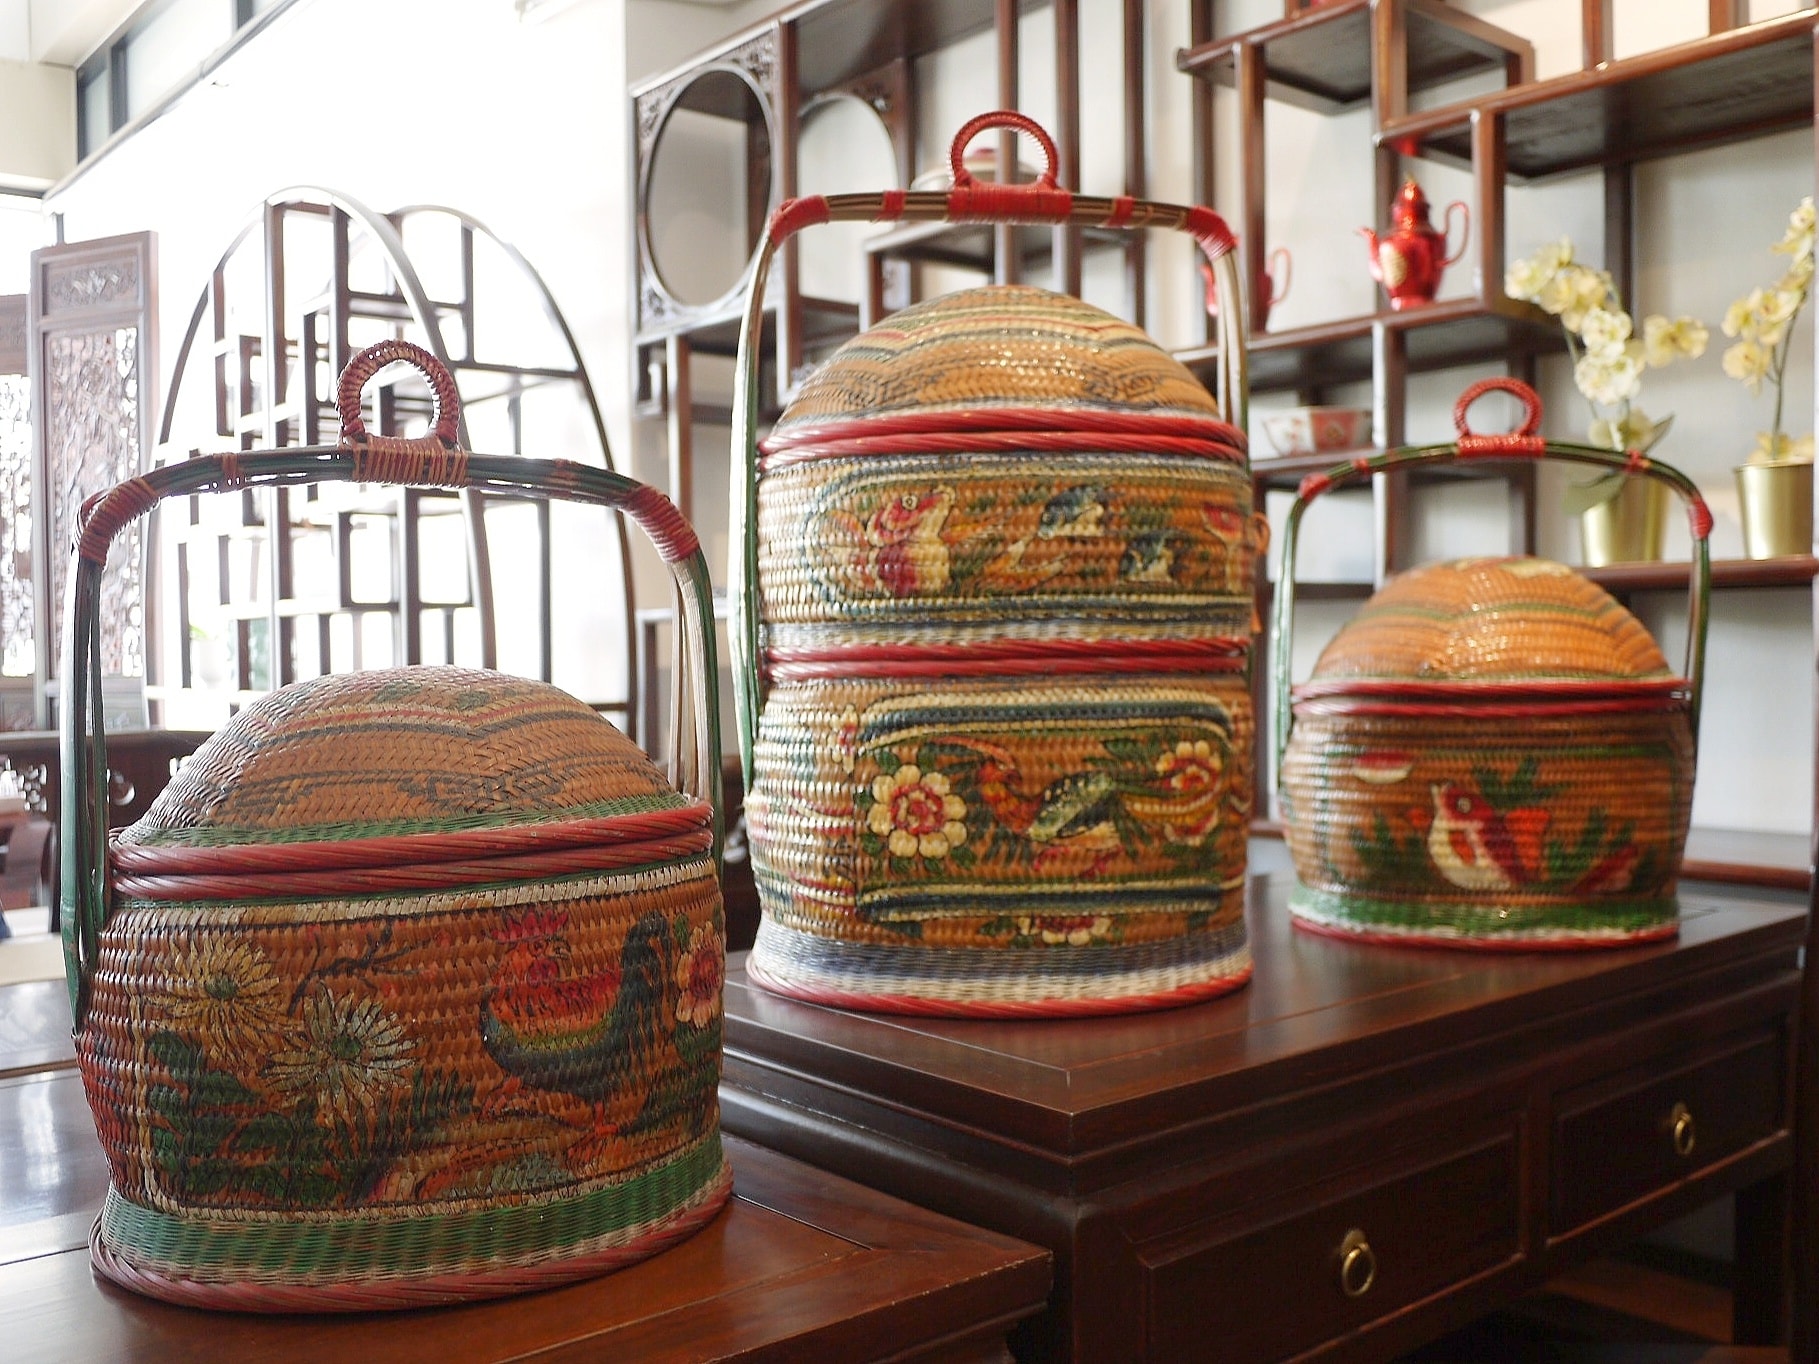 ฮวยน้าตะกร้าจีน traditional chinese wedding basket